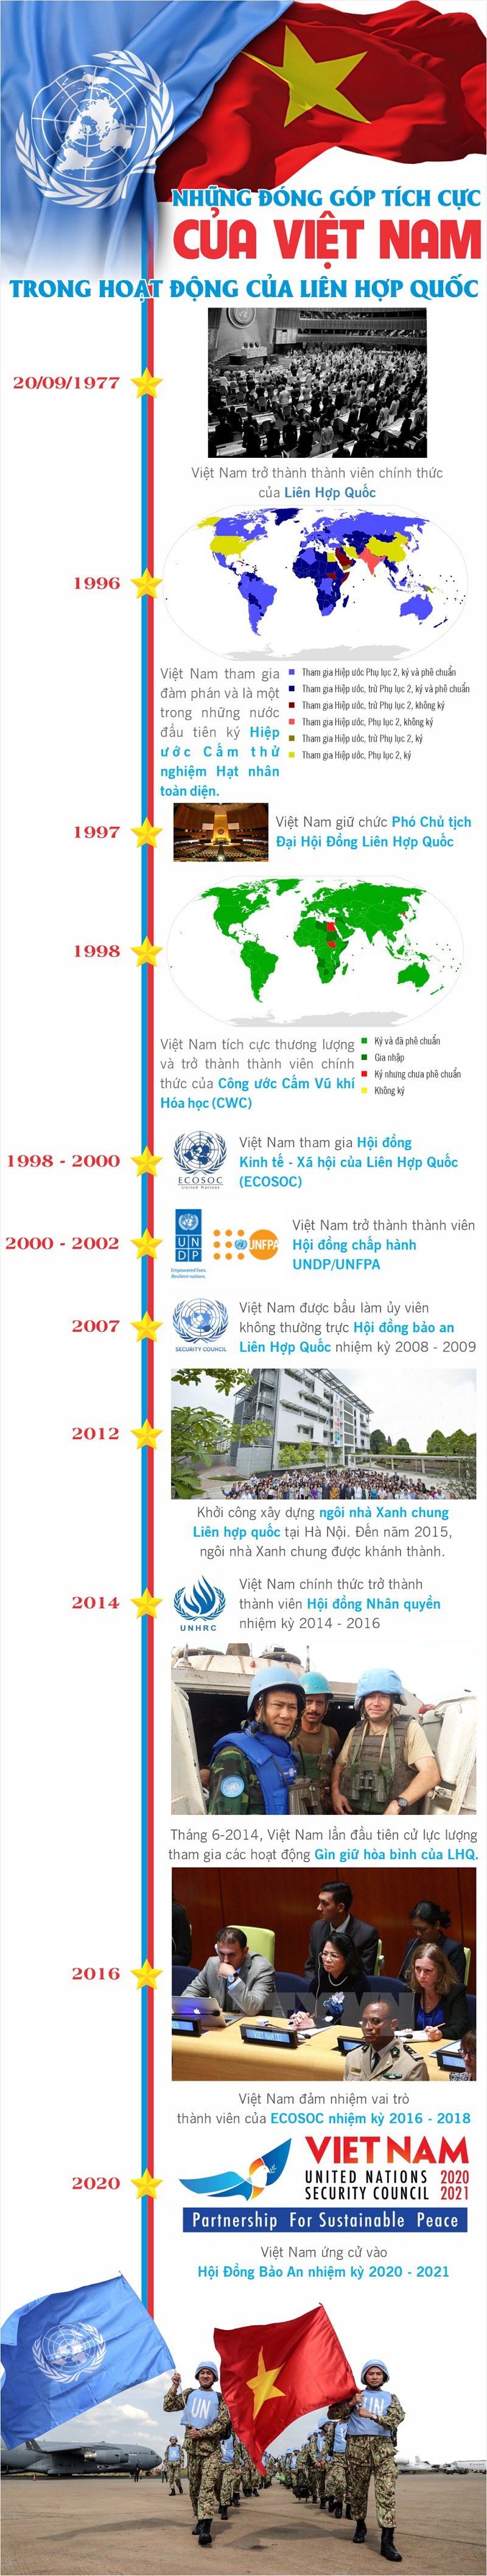 Những đóng góp tích cực của Việt Nam trong các hoạt động của Liên Hợp Quốc - Ảnh 1